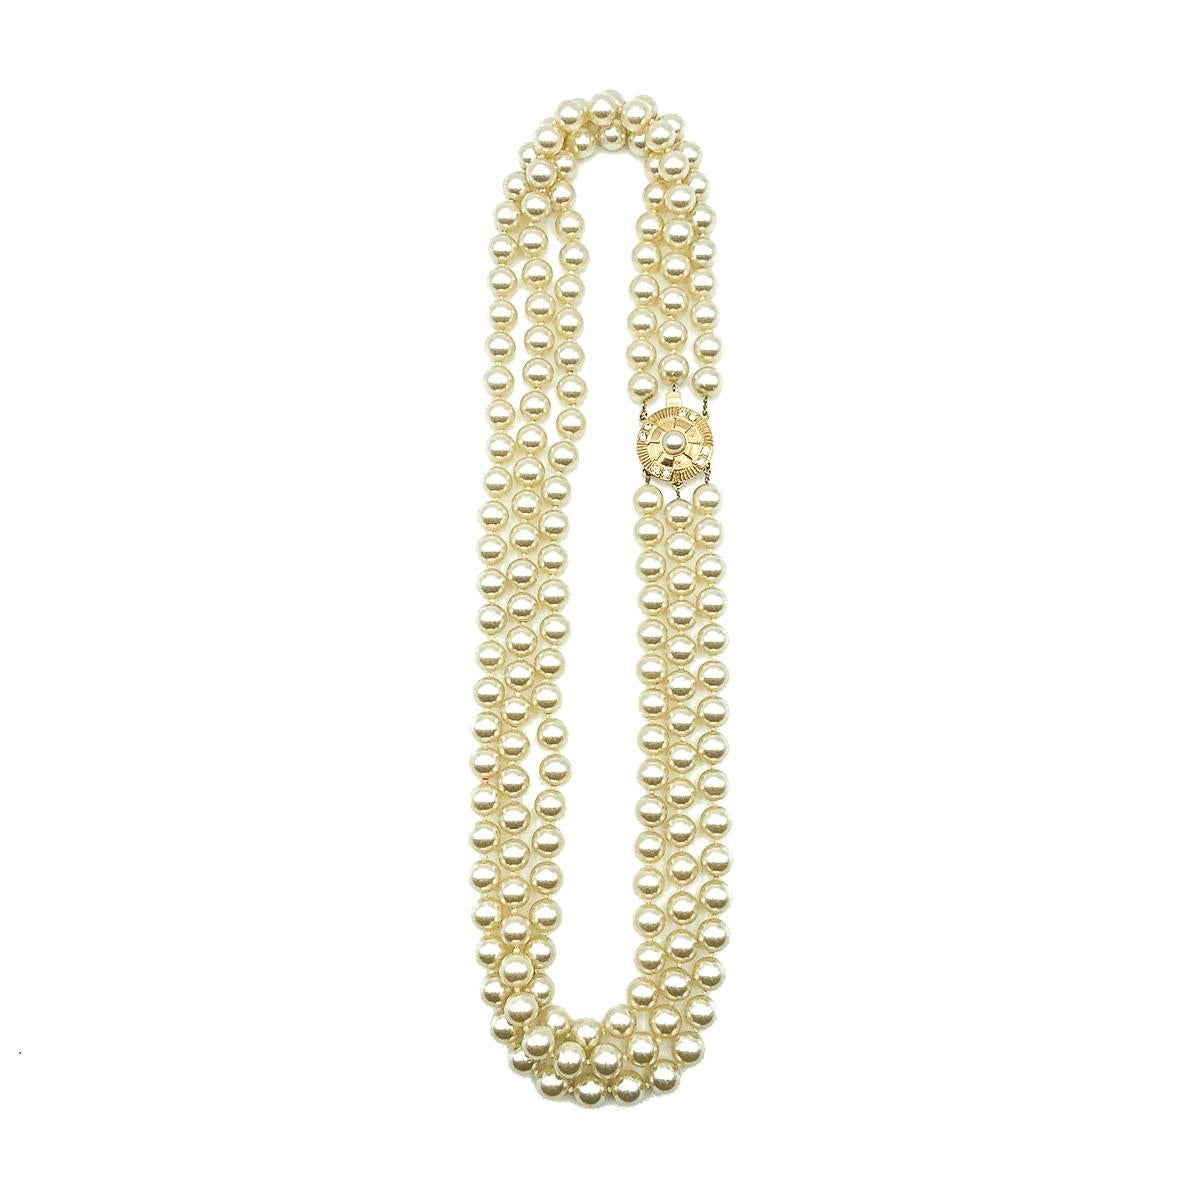 Eine dreifache Vintage-Perlenkette. Sie besteht aus drei wunderschönen Strängen aus nicht abgestuften Glasimitationsperlen und ist mit einem mit Kristallen und einer zentralen Perle verzierten Verschluss im Stil einer Zielscheibe versehen. Sehr